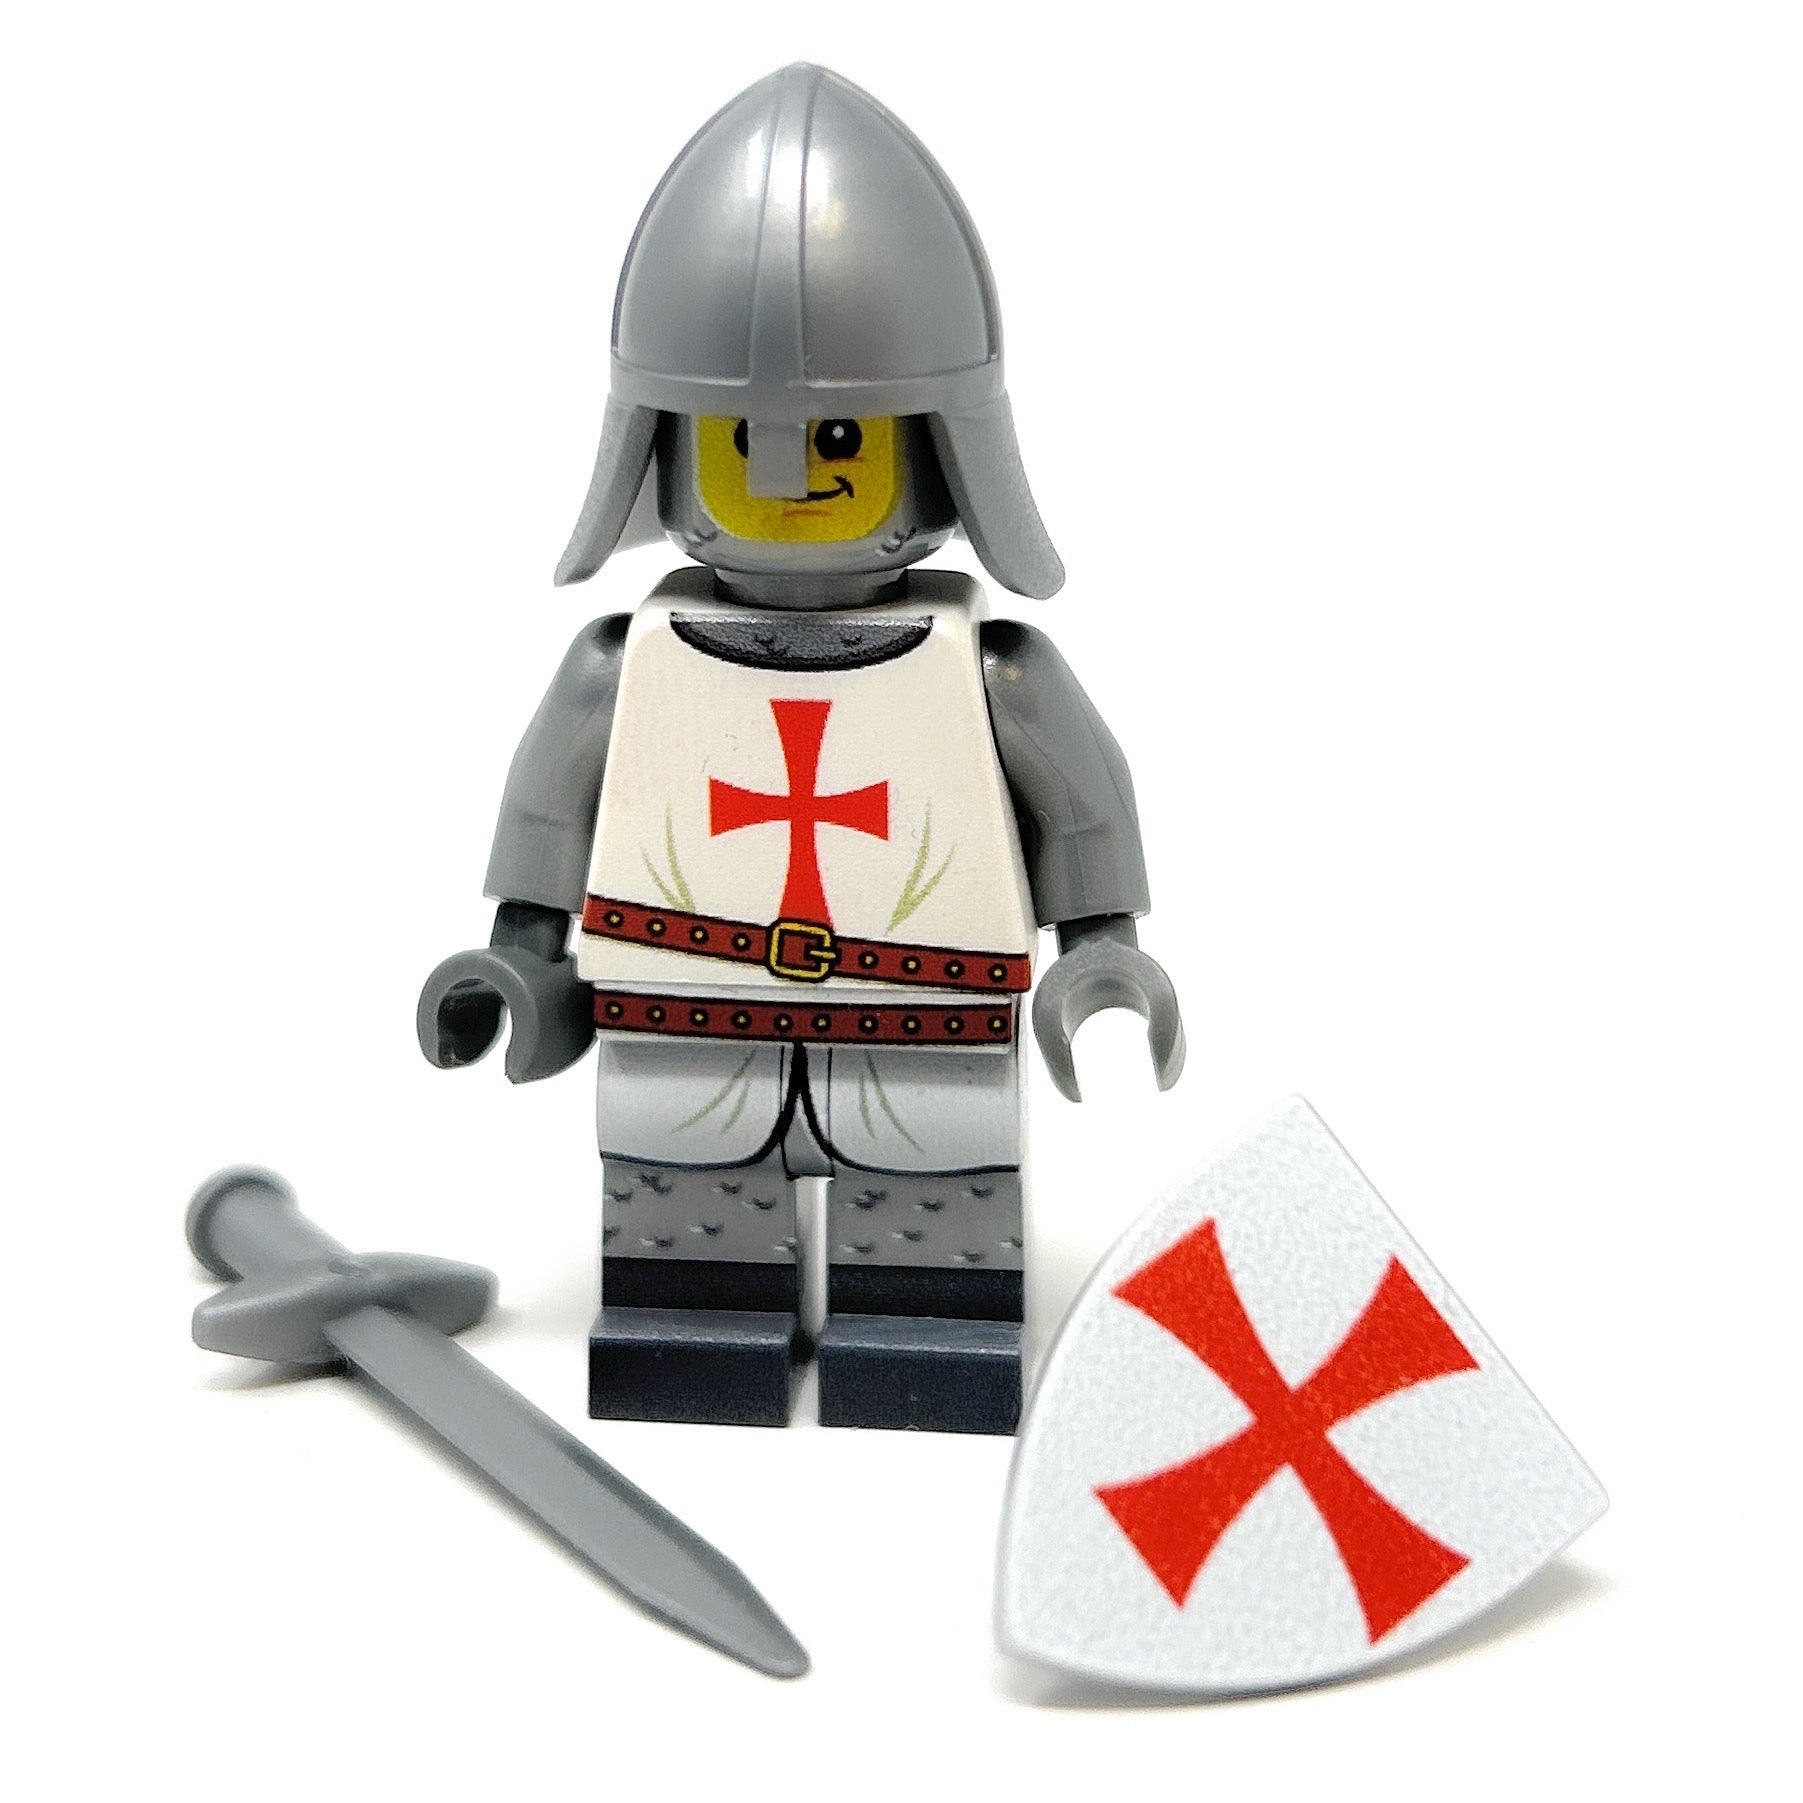 Custom Templar Crusader Knight Minifig made using LEGO parts - B3 Customs